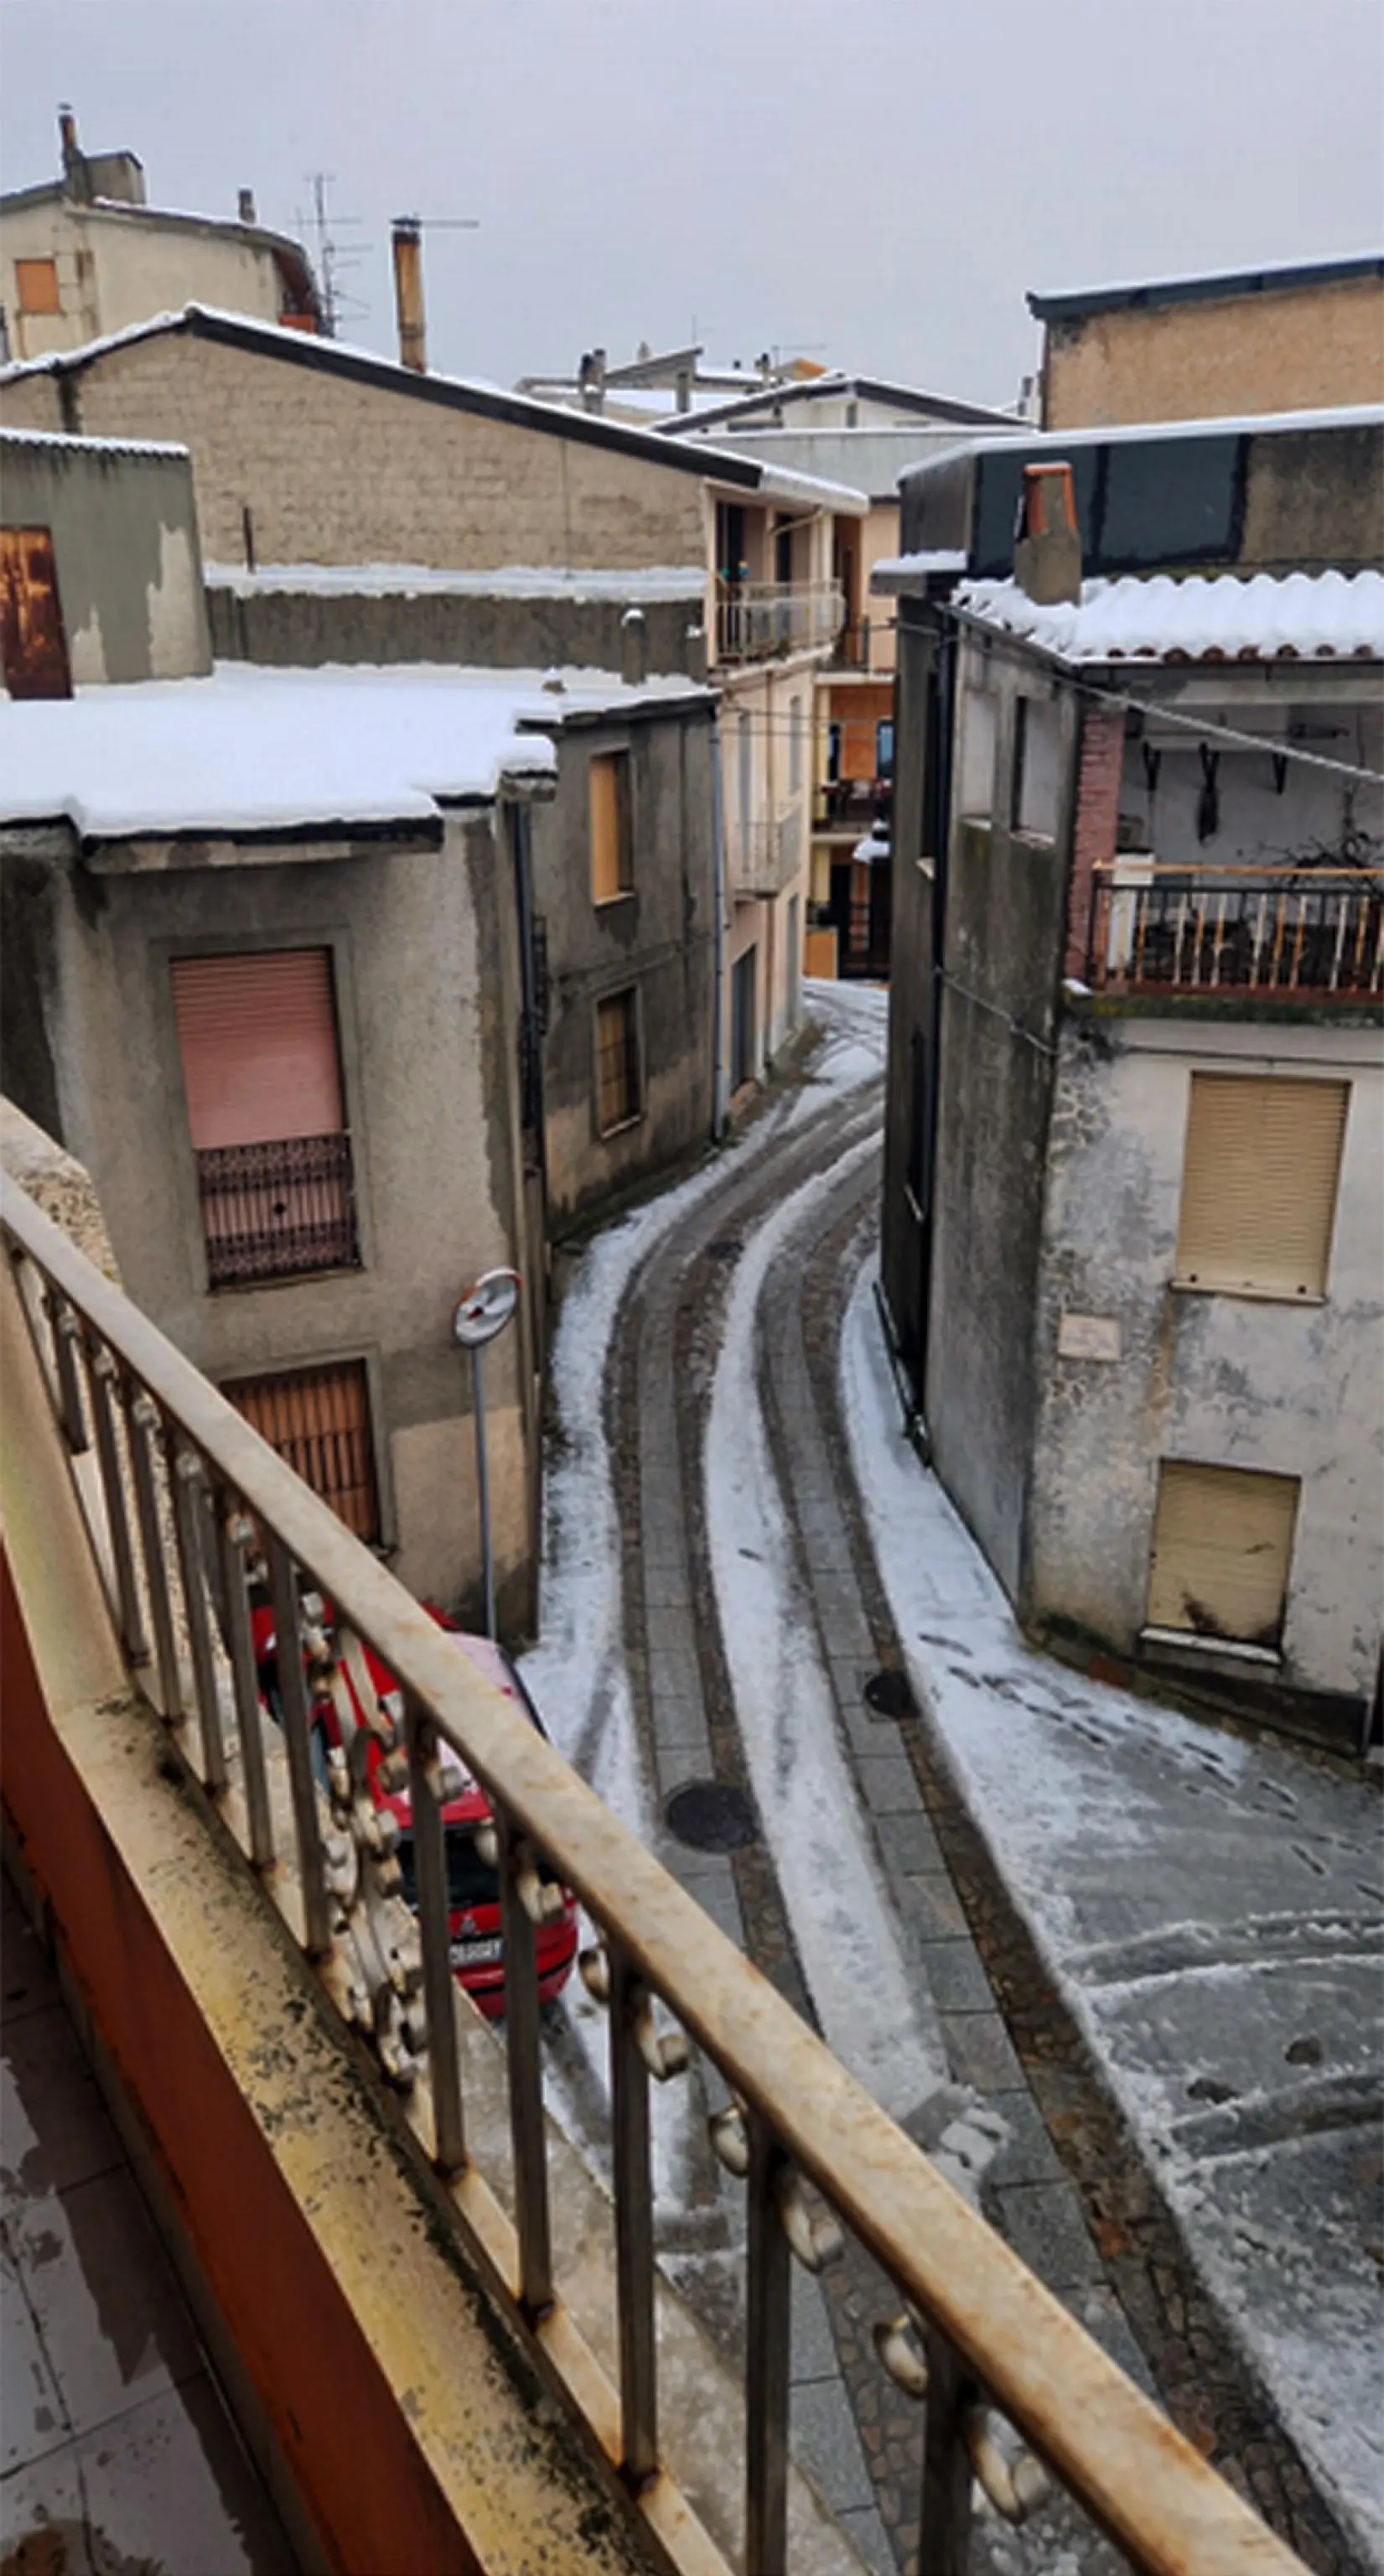 Torna la neve in Sardegna, fiocchi bianchi a meno di 1000 metri